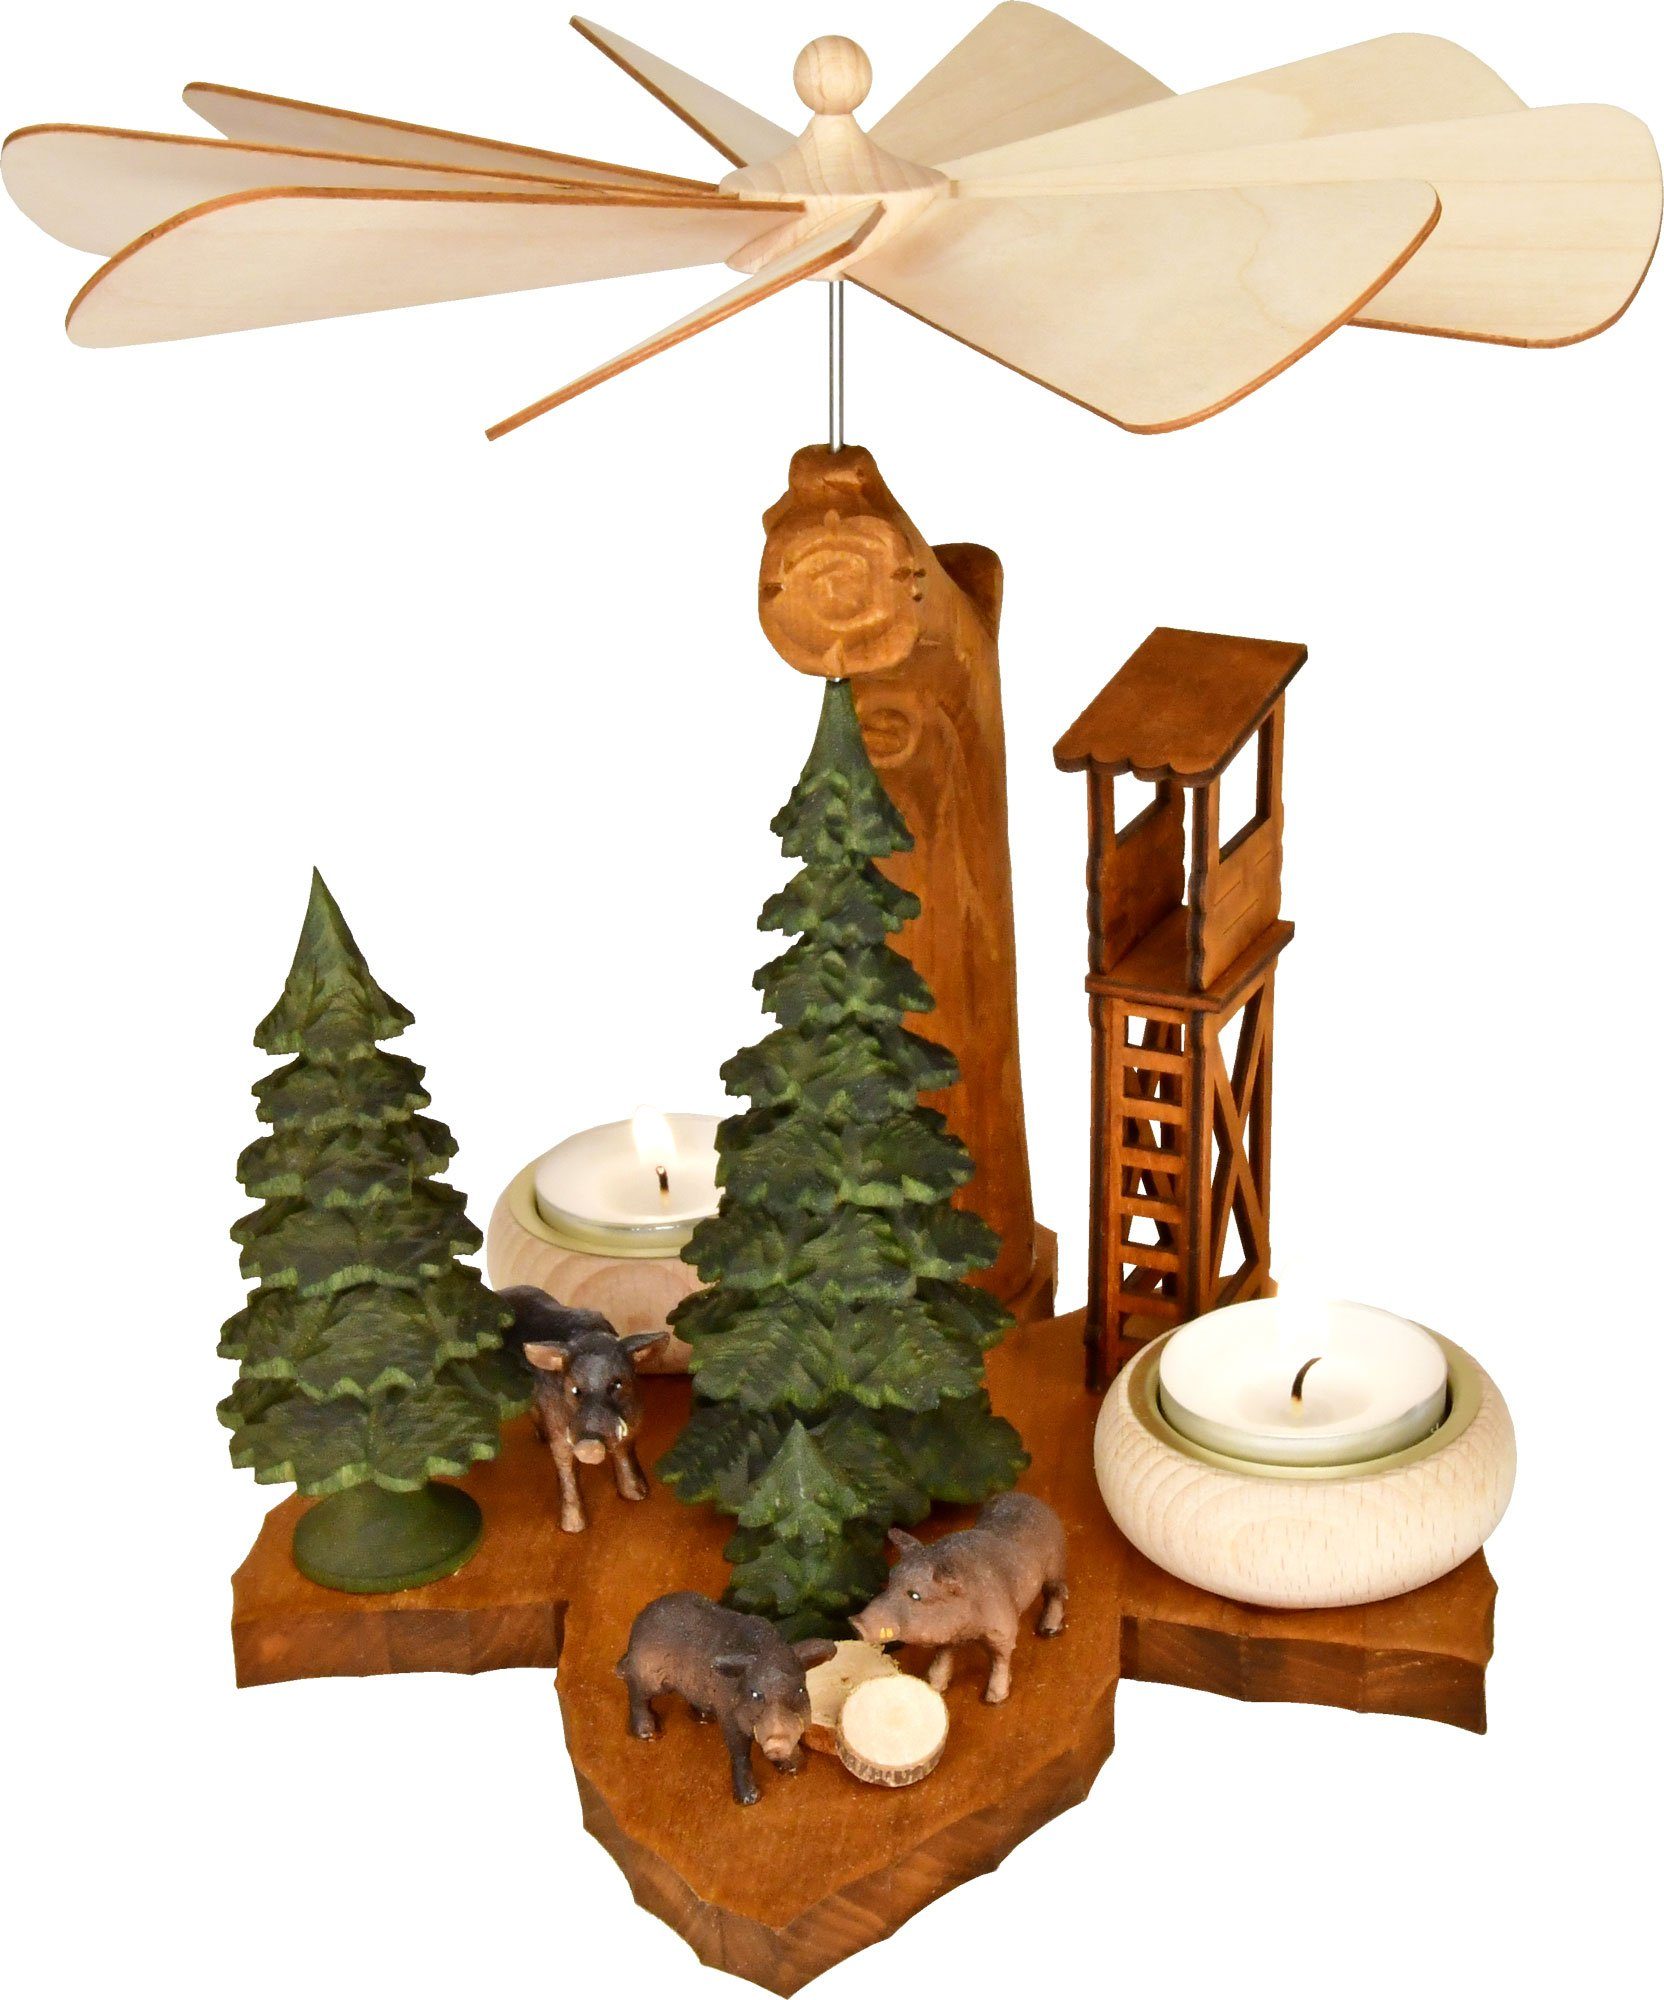 RATAGS Weihnachtspyramide Massivholz-Blattpyramide, Wildsau für Teelichte, Höhe ca. 26 cm, Handarbeit aus dem Erzgebirge | Weihnachtspyramiden